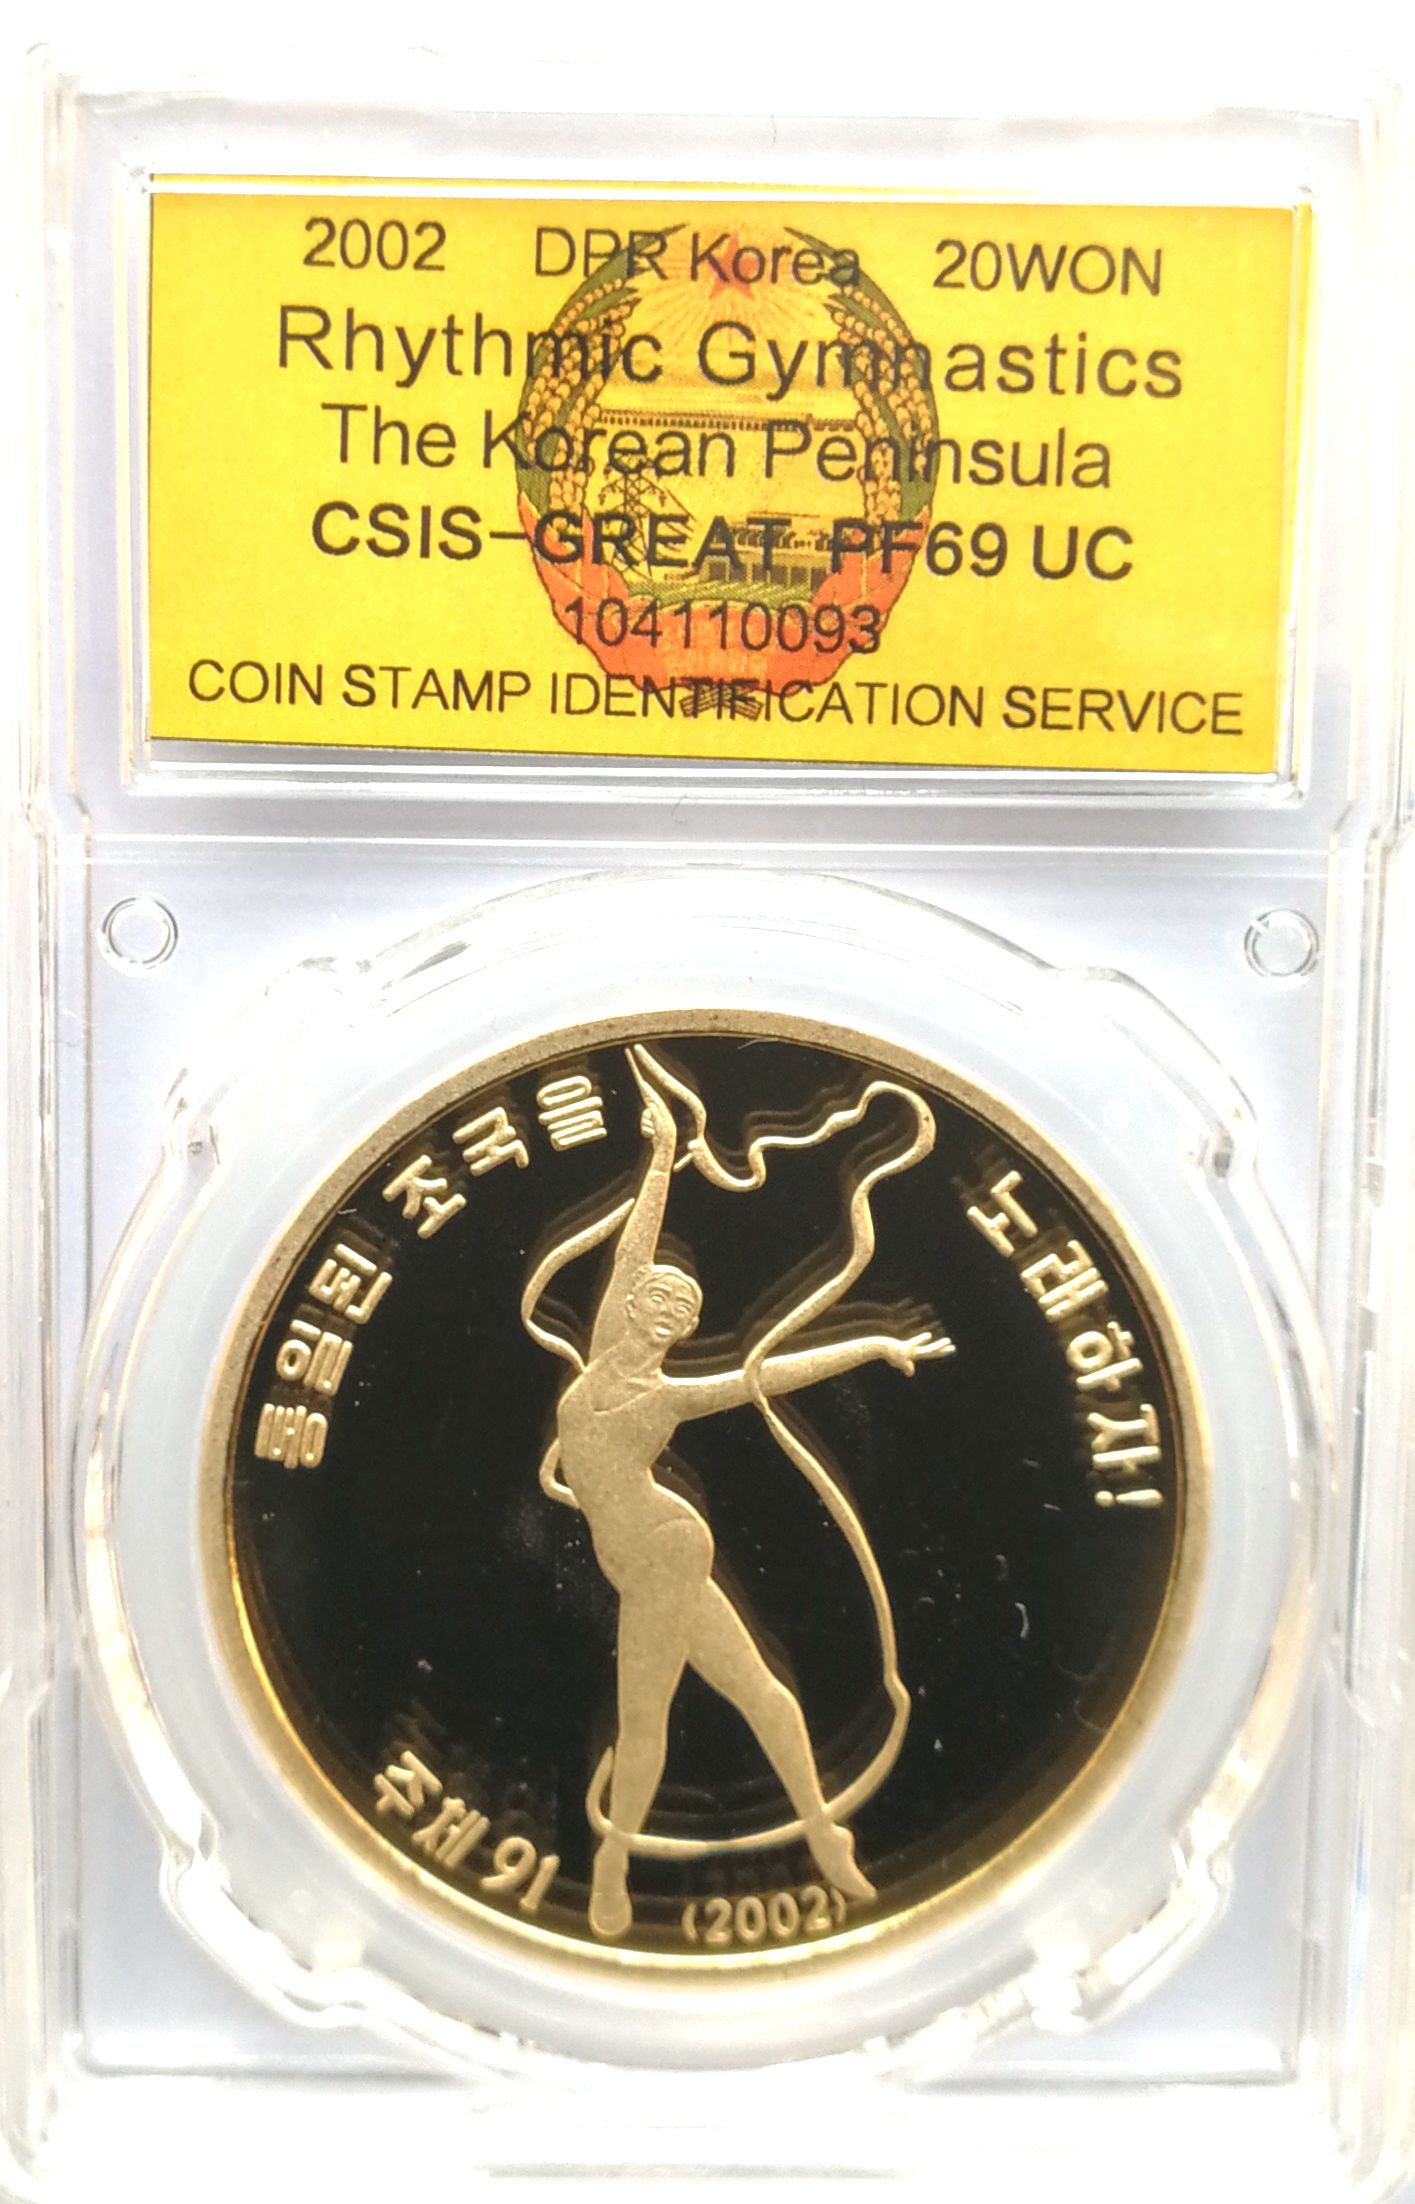 L3372, Korea "Rhythmic Gymnastics" Proof Bronze Coin 2002, CSIS Grade - Click Image to Close